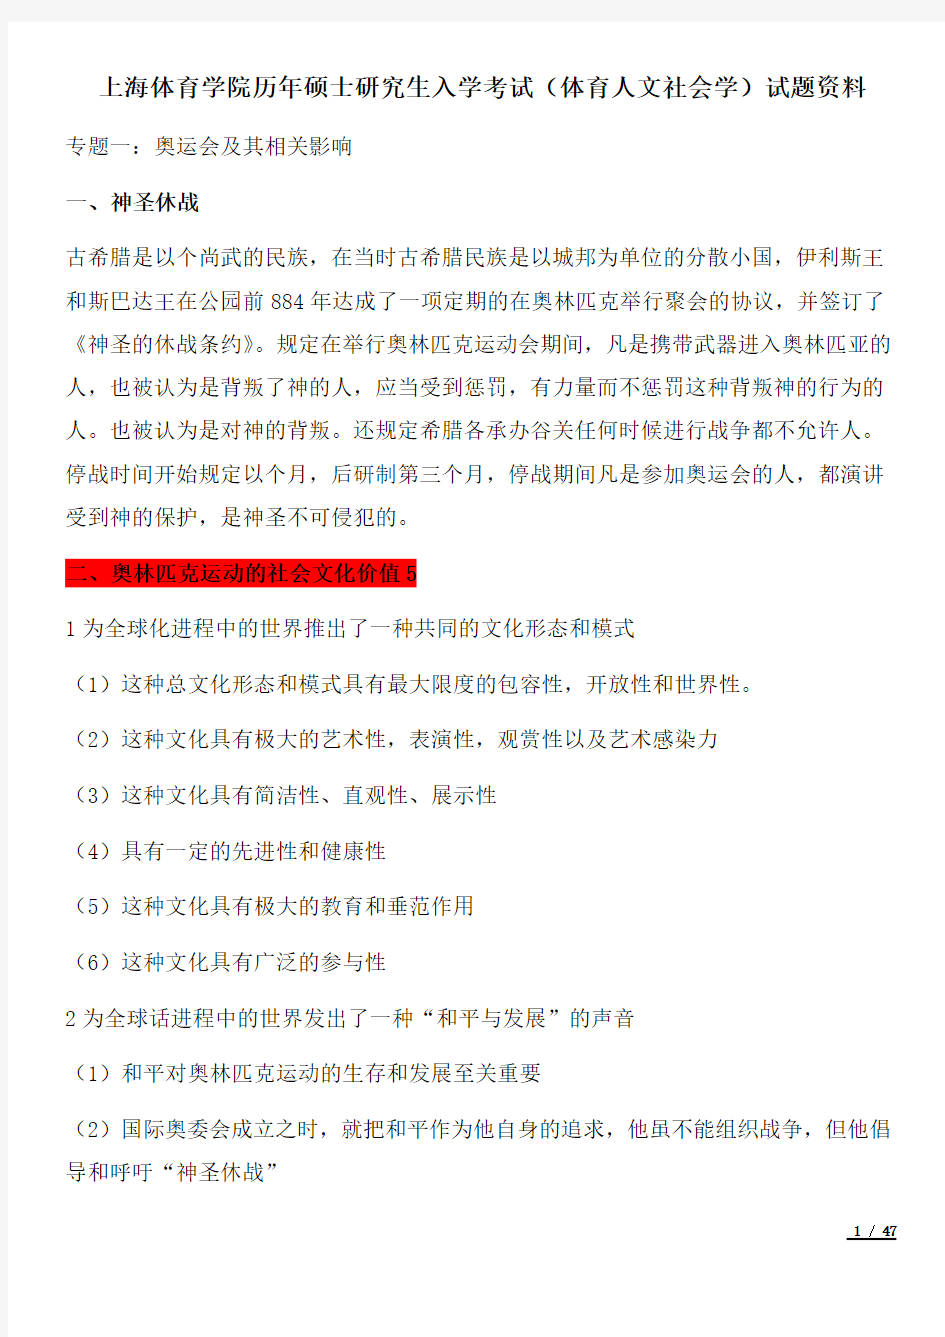 上海体育学院历年硕士研究生入学考试(体育人文社会学)试题资料